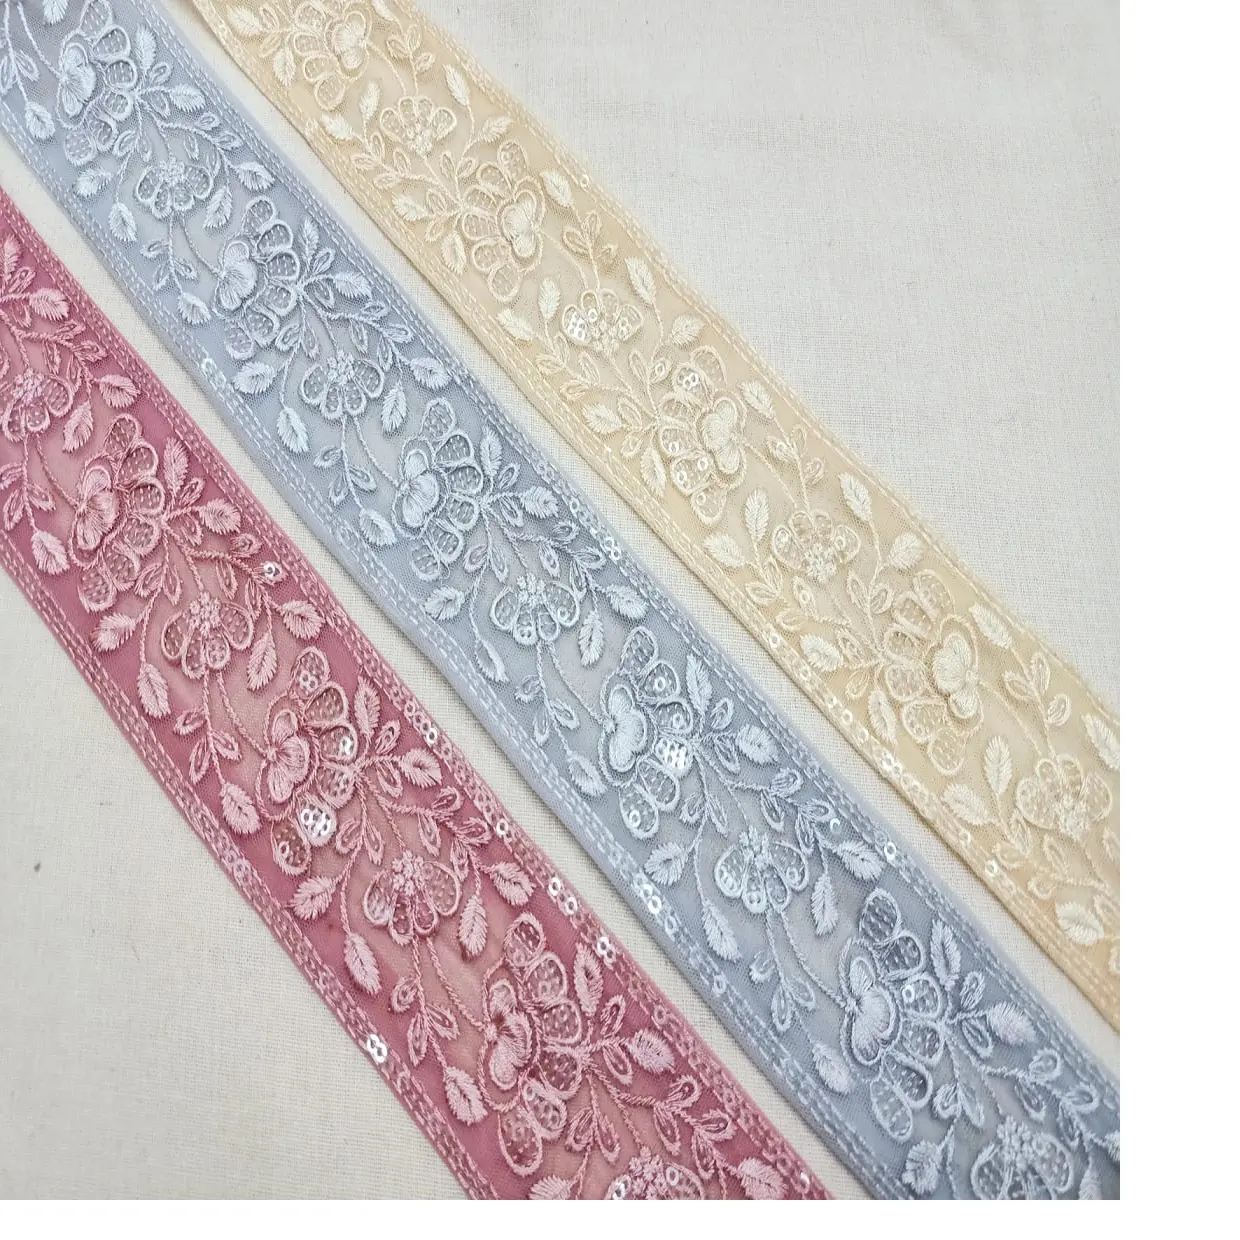 Rubans brodés faits sur mesure, aux couleurs pastel, bleu, rose, beige, avec broderie florale encastrée, pour stylistes de vêtements, 1 pièce